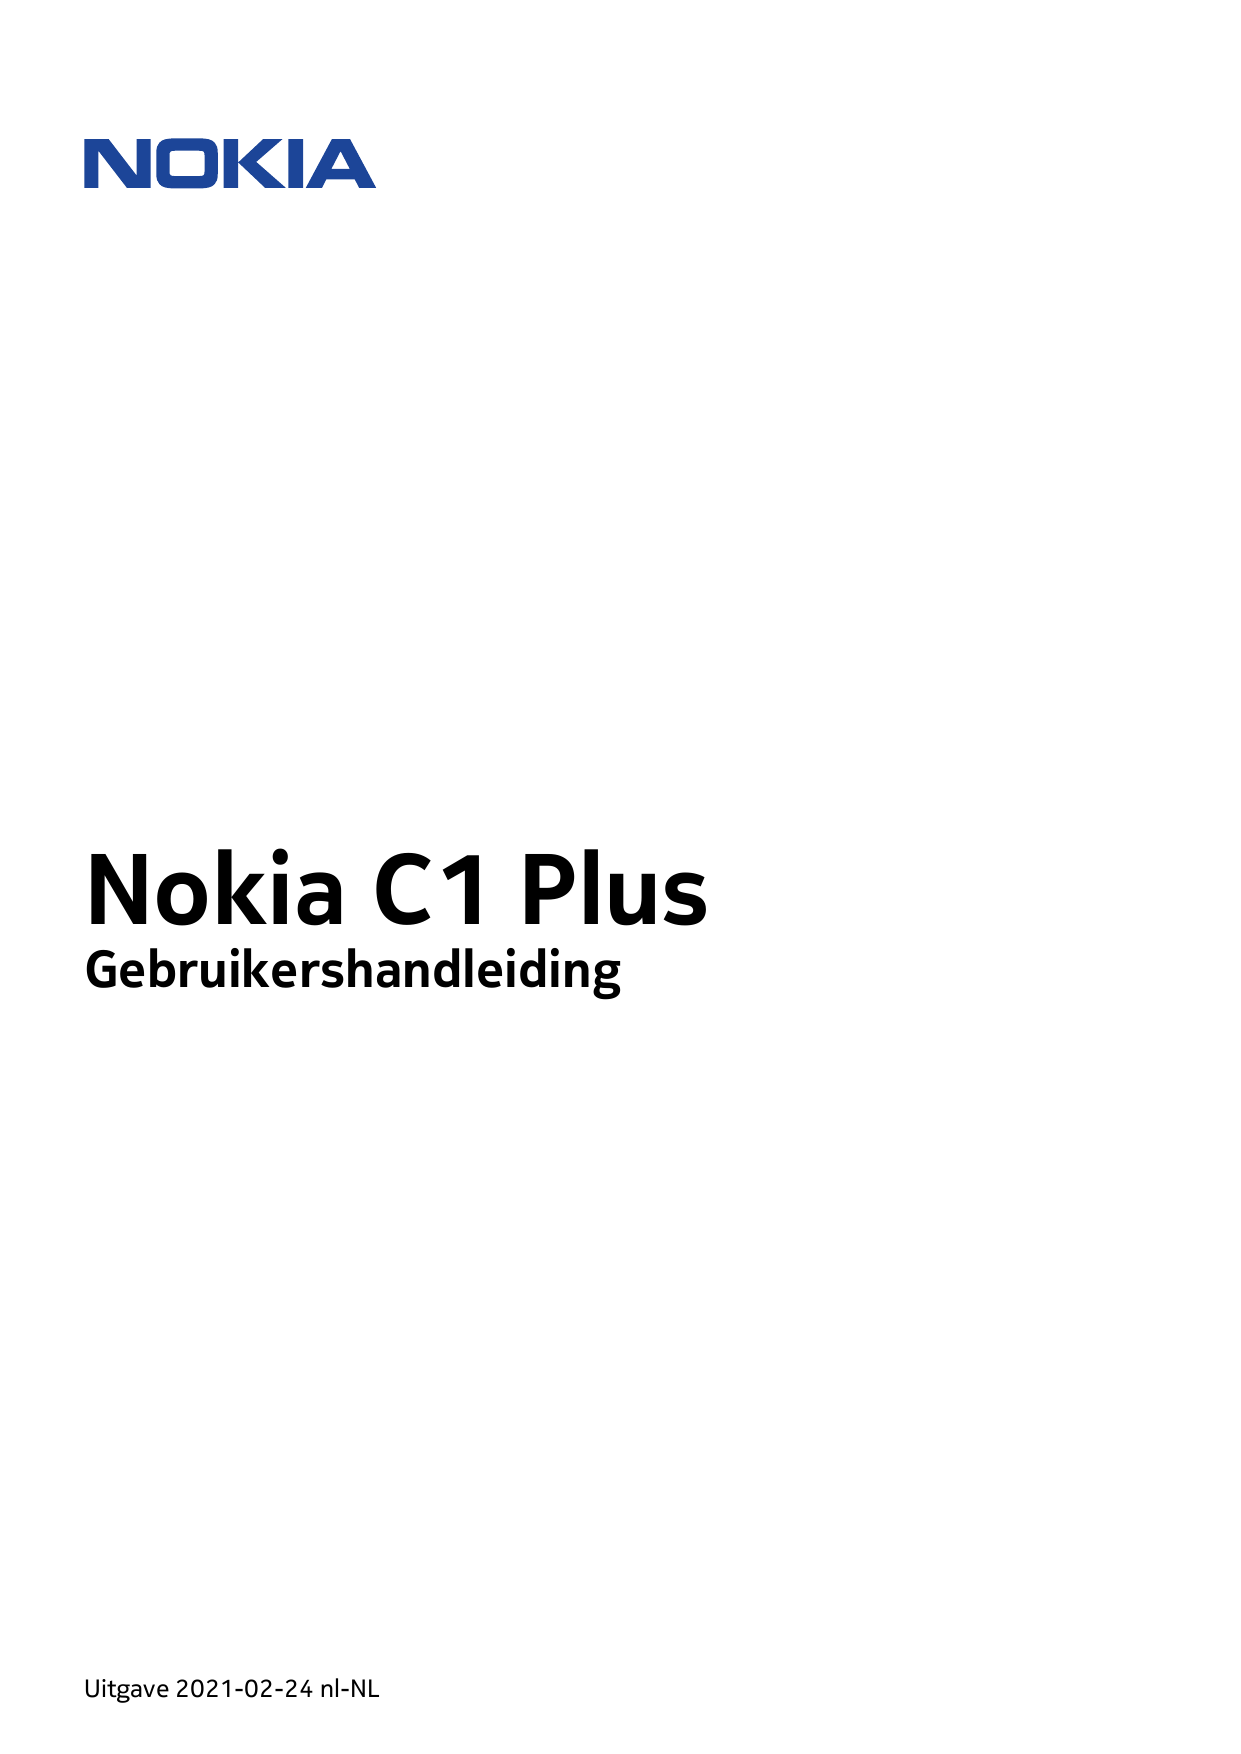 Nokia C1 PlusGebruikershandleidingUitgave 2021-02-24 nl-NL